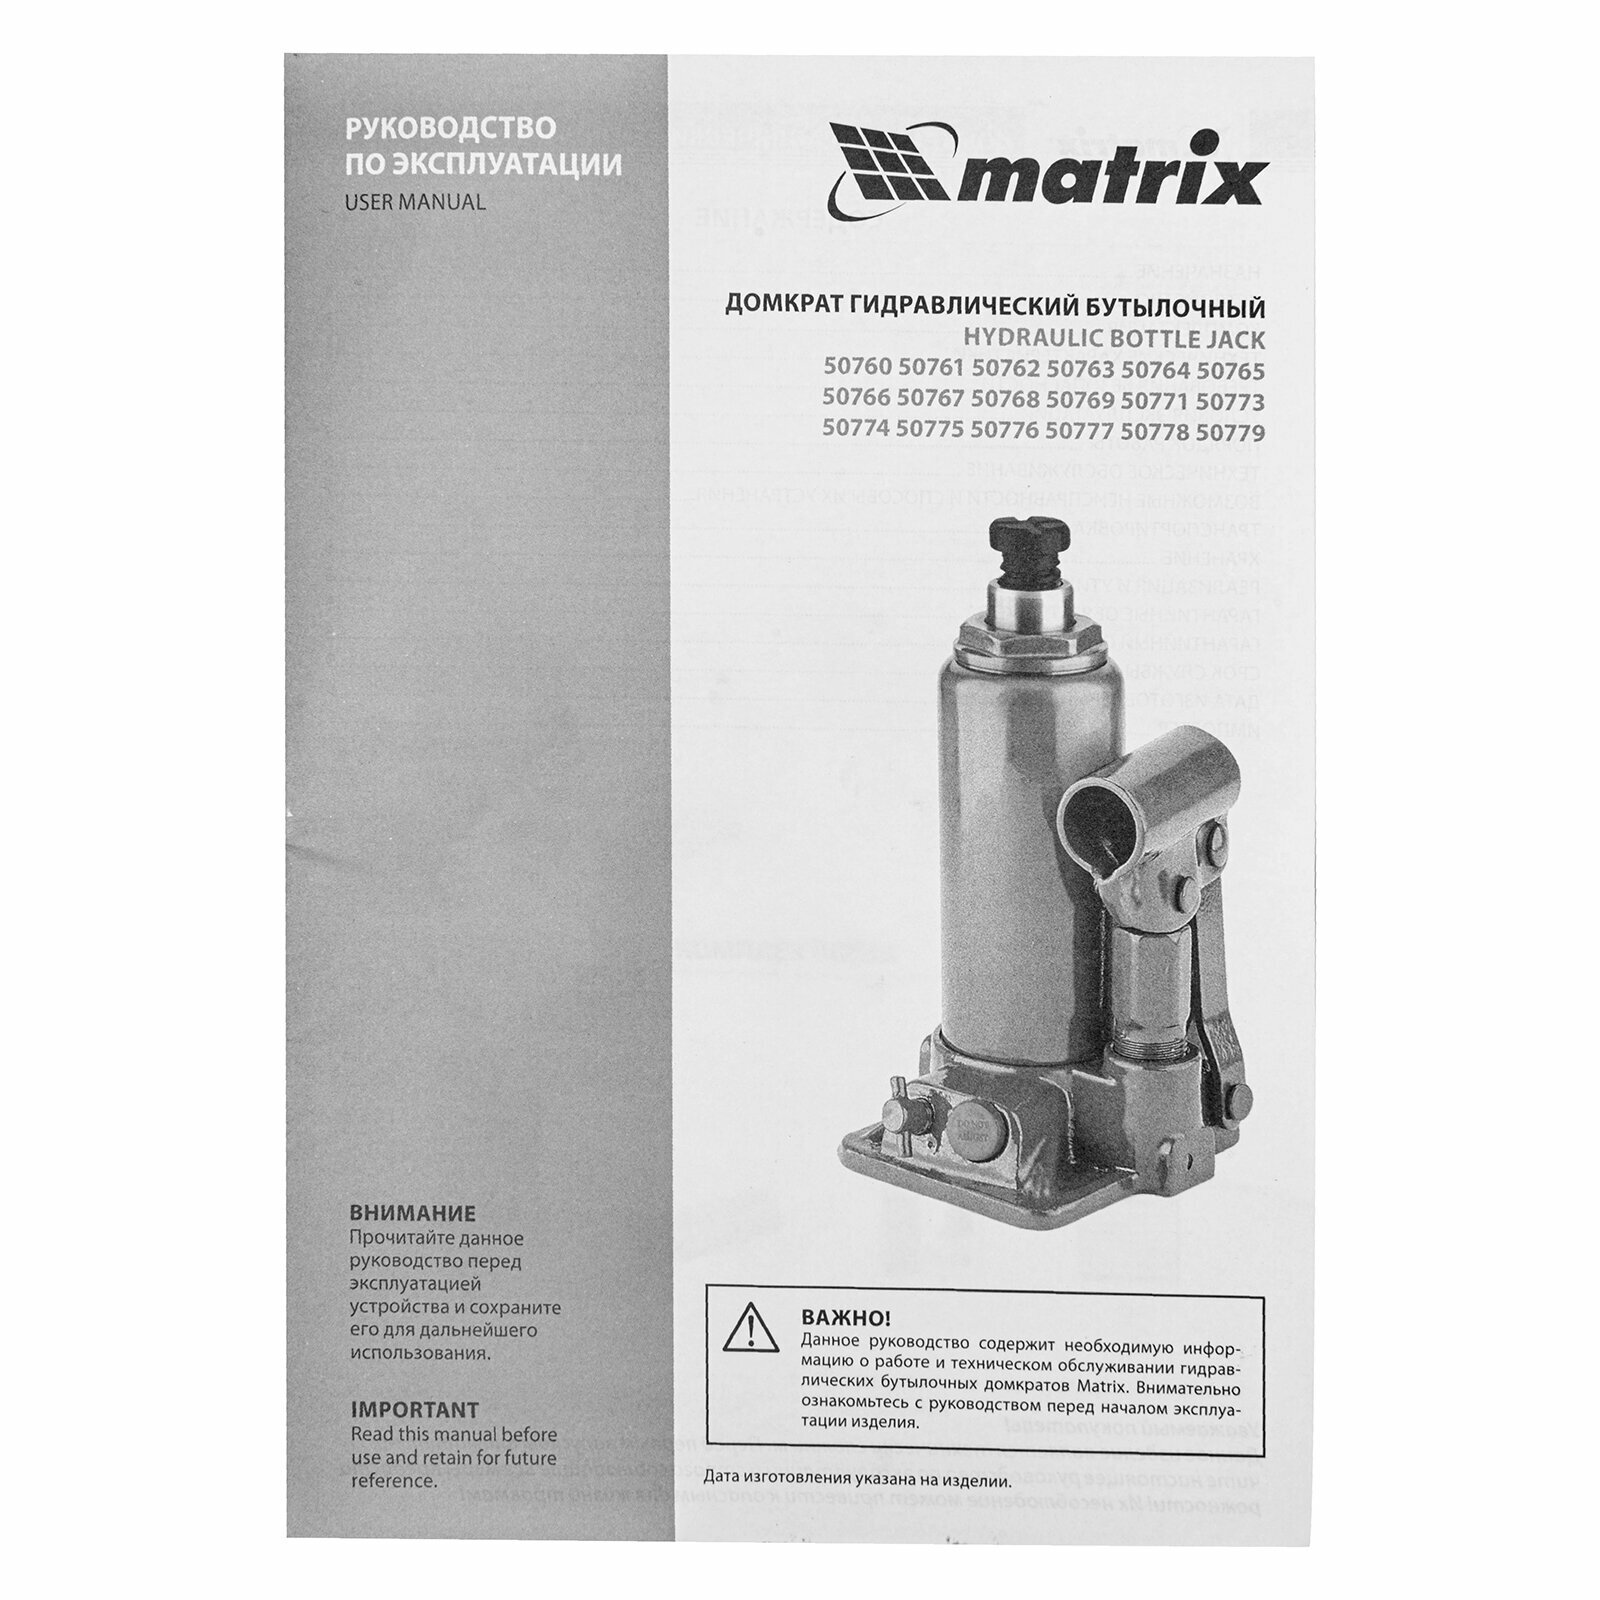 Домкрат бутылочный гидравлический matrix 50768 (12 т)